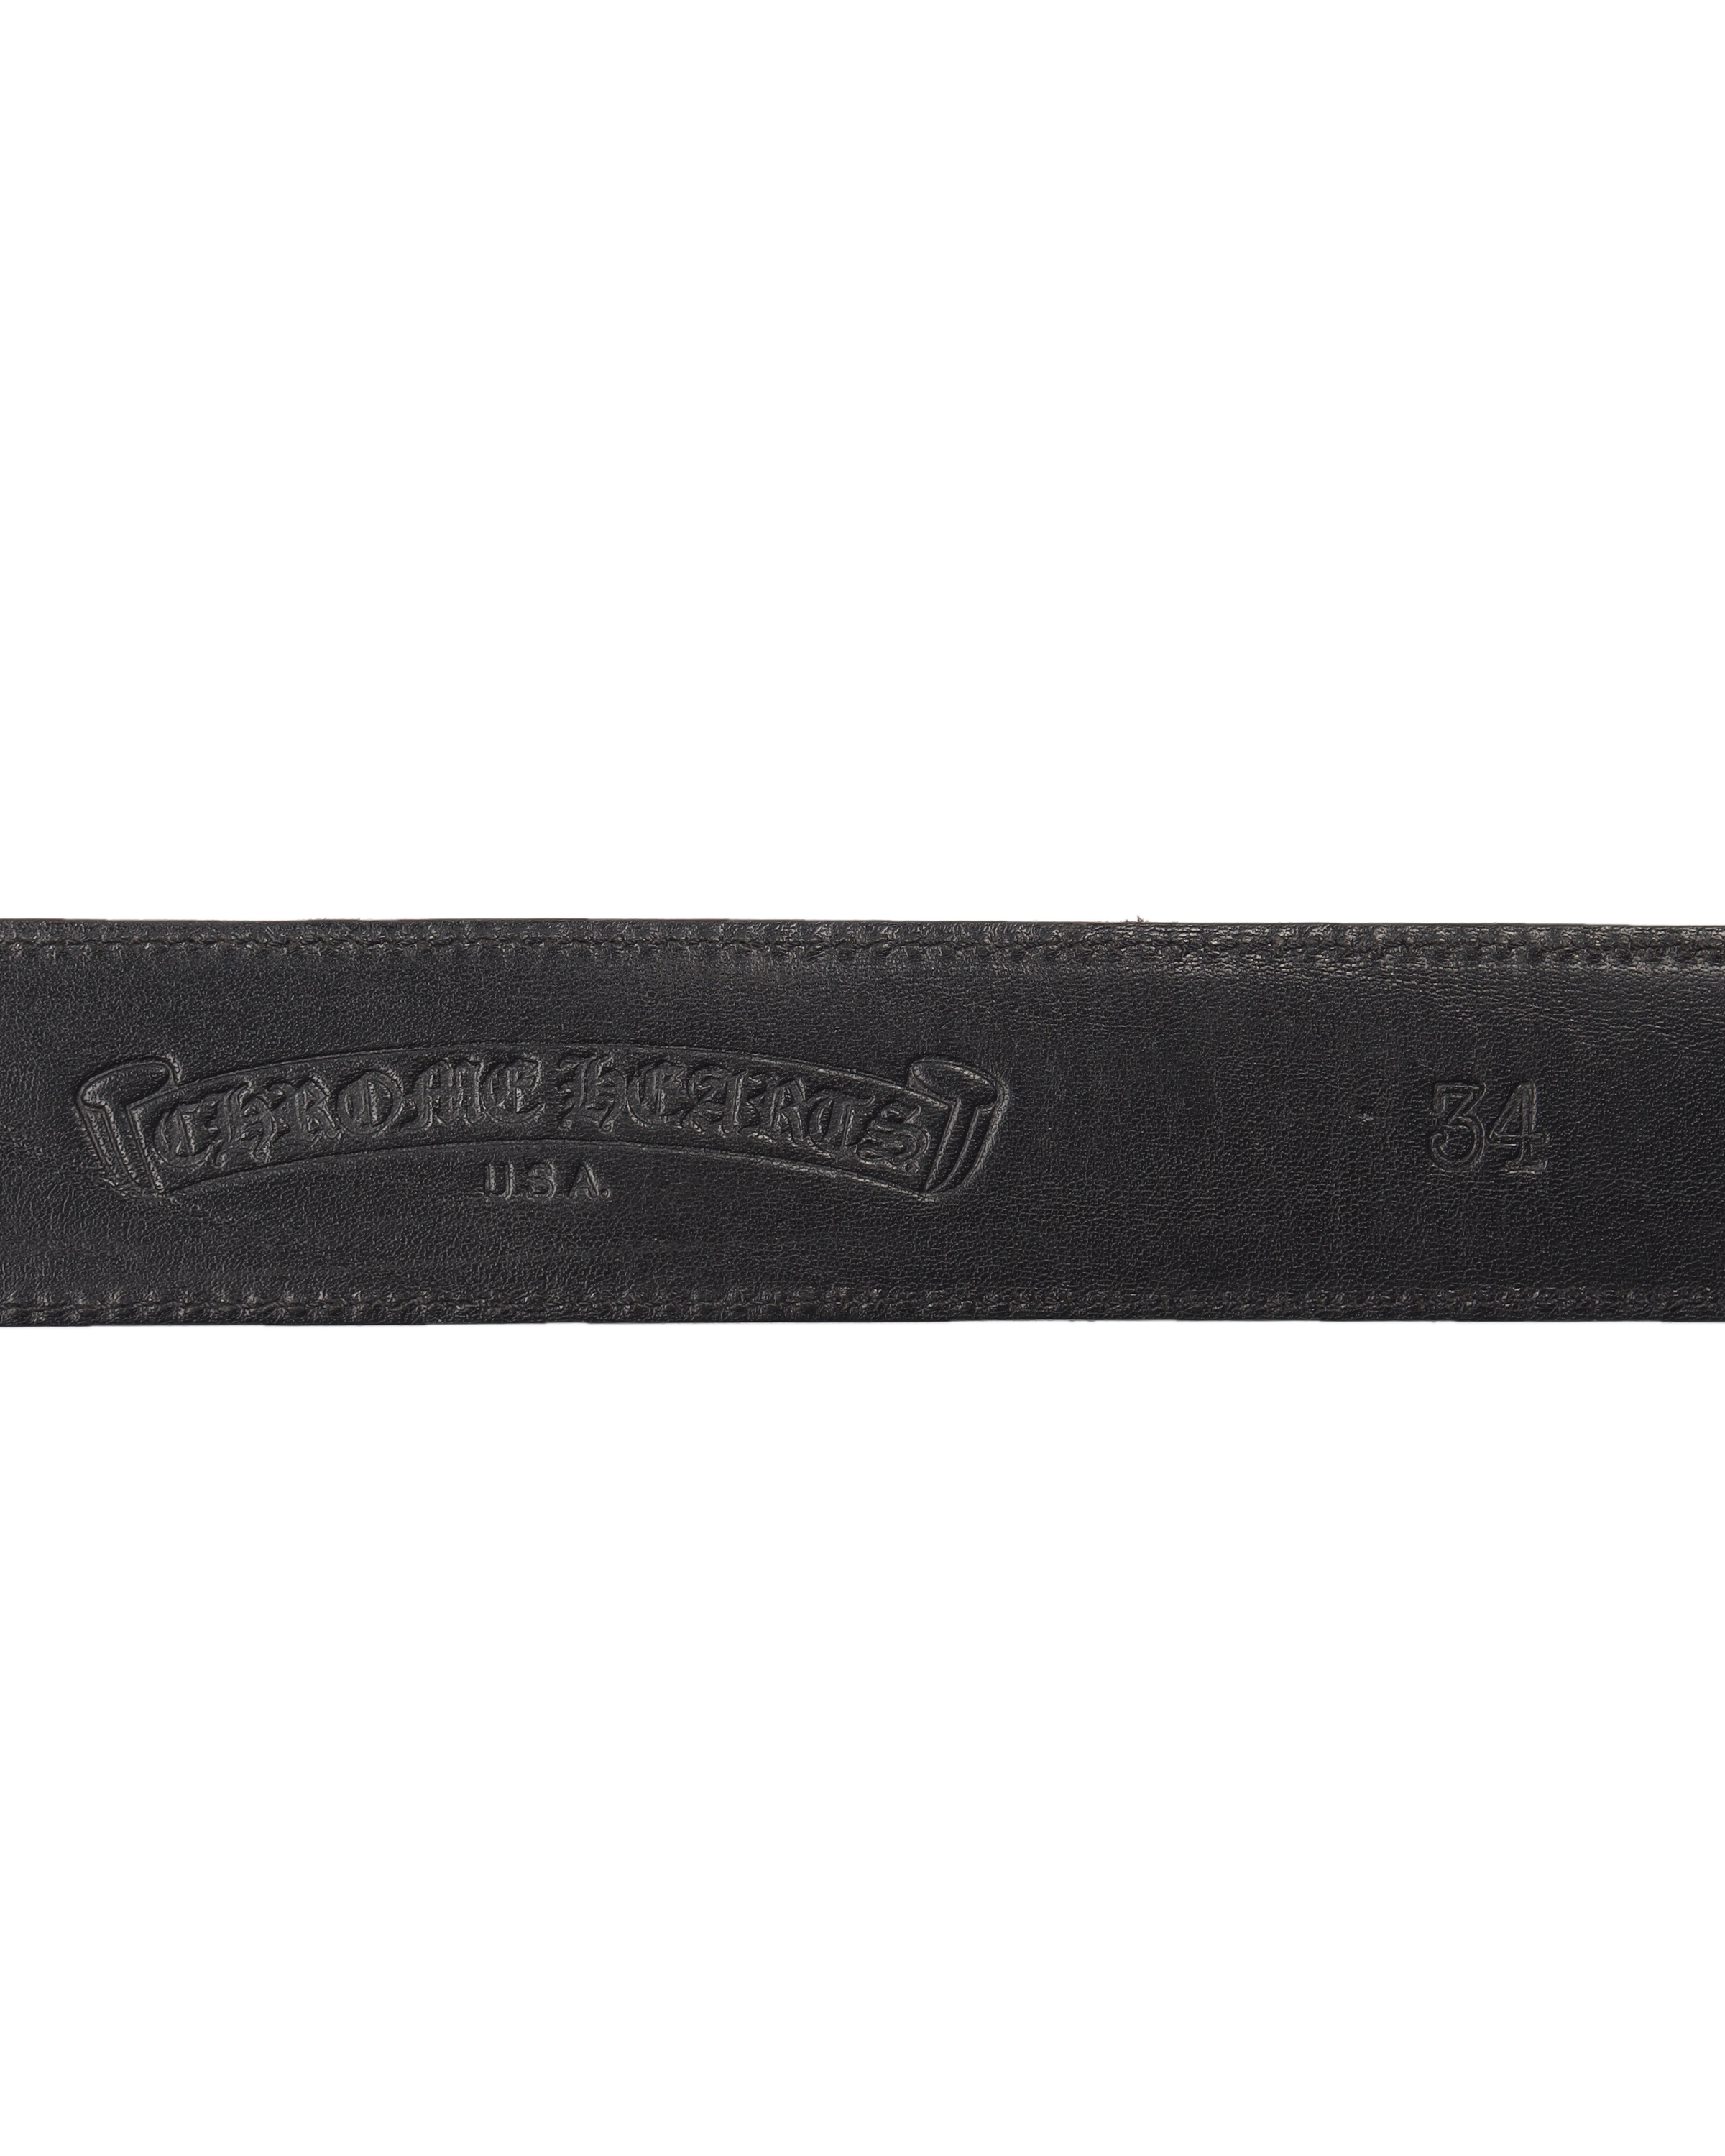 Vintage Dagger Buckle Belt